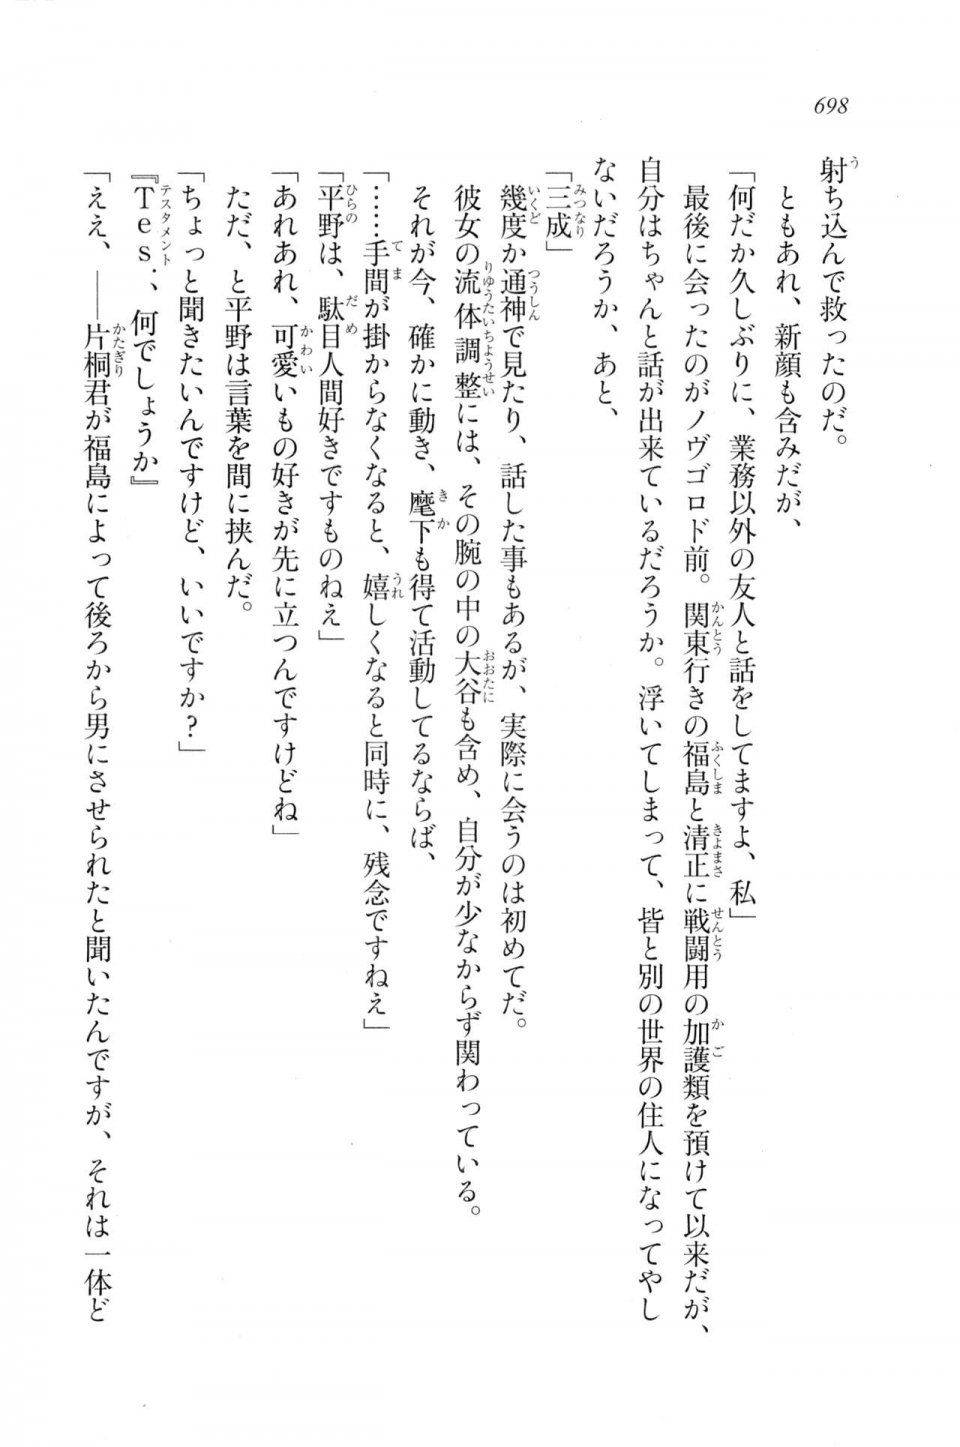 Kyoukai Senjou no Horizon LN Vol 20(8B) - Photo #698